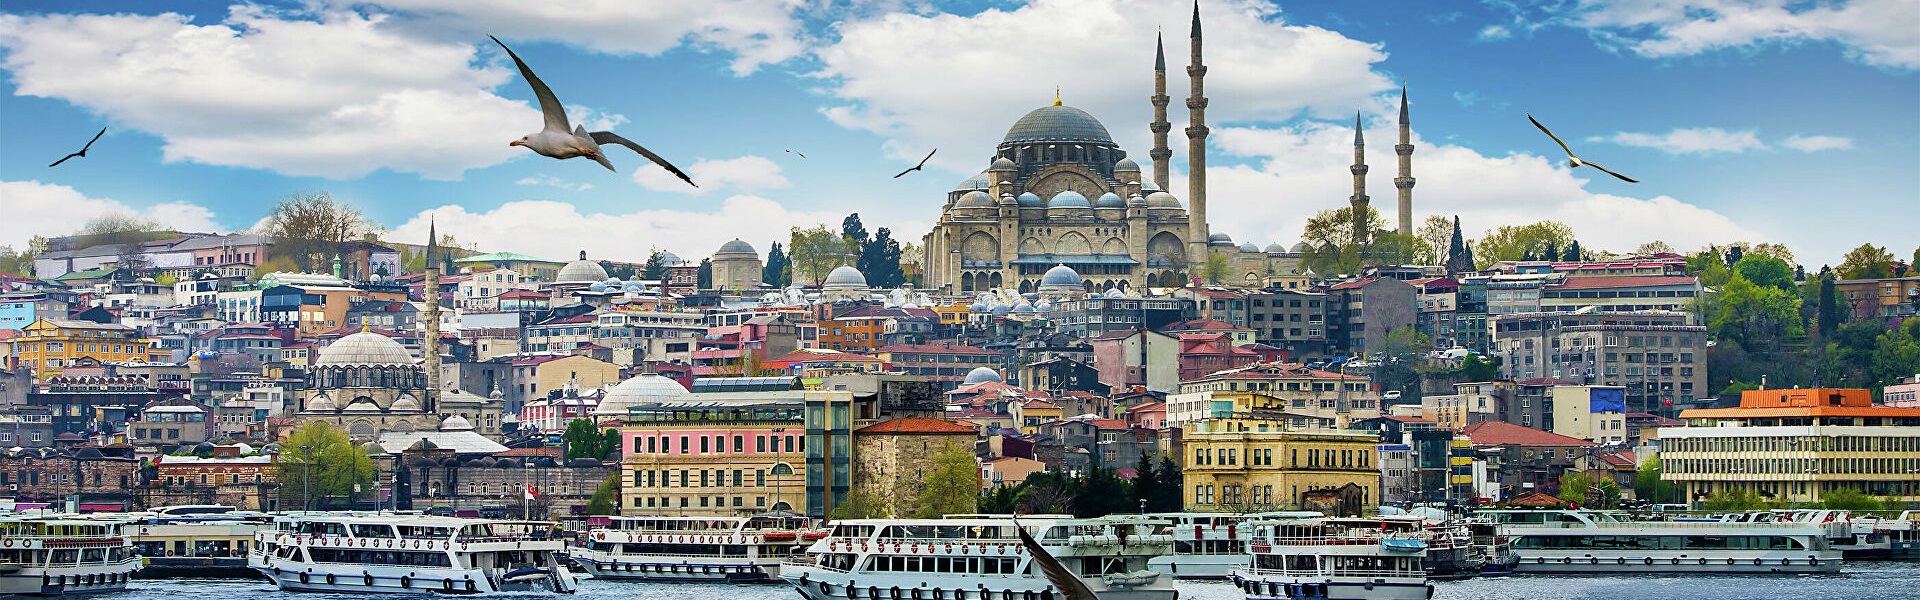 Экскурсии в Стамбуле Турция